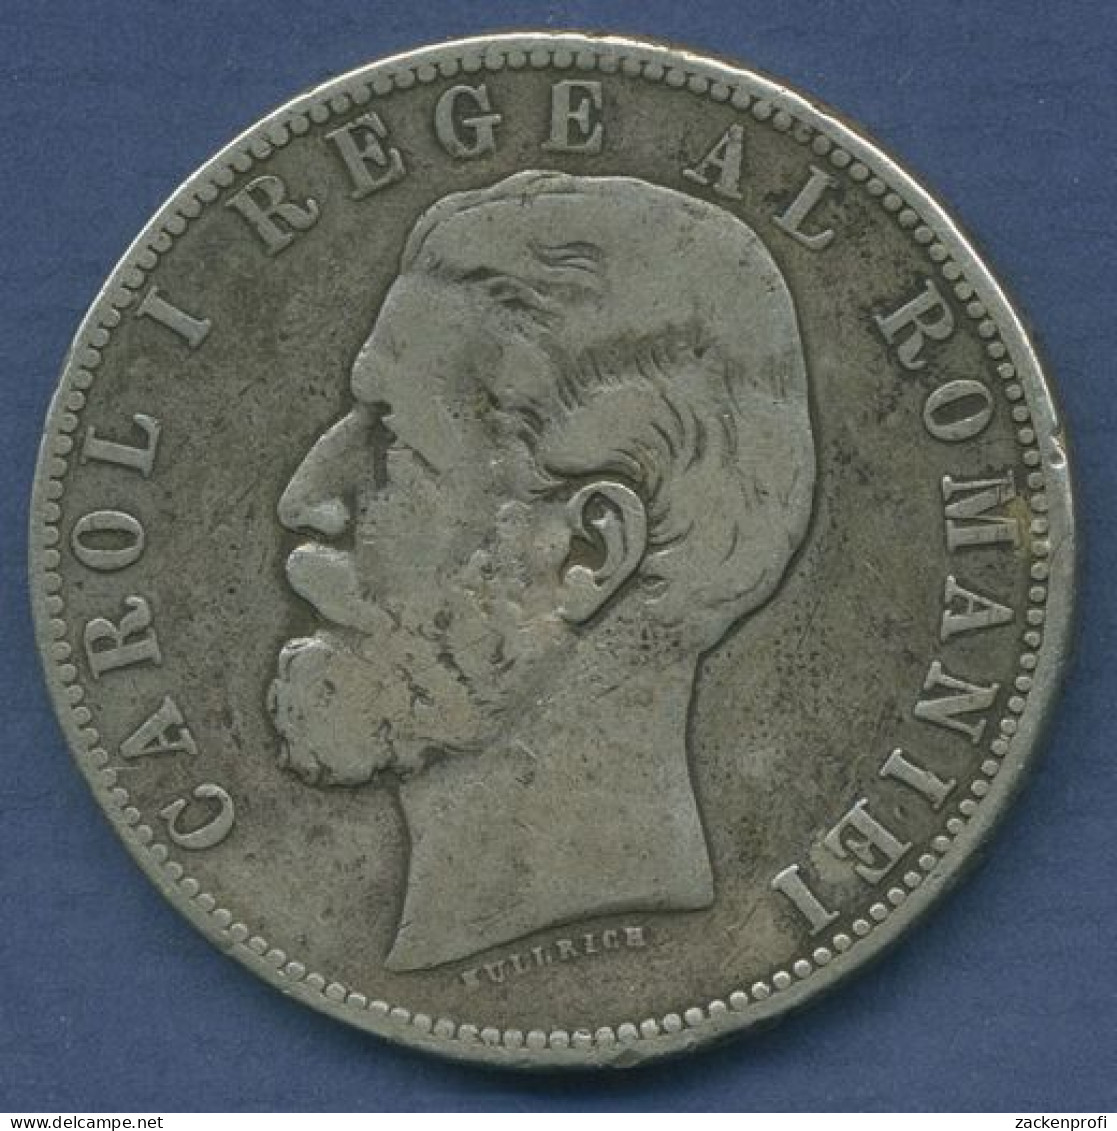 Rumänien 5 Lei 1883 B, Carol I., KM 17.1 Schön - Sehr Schön (m3937) - Roumanie